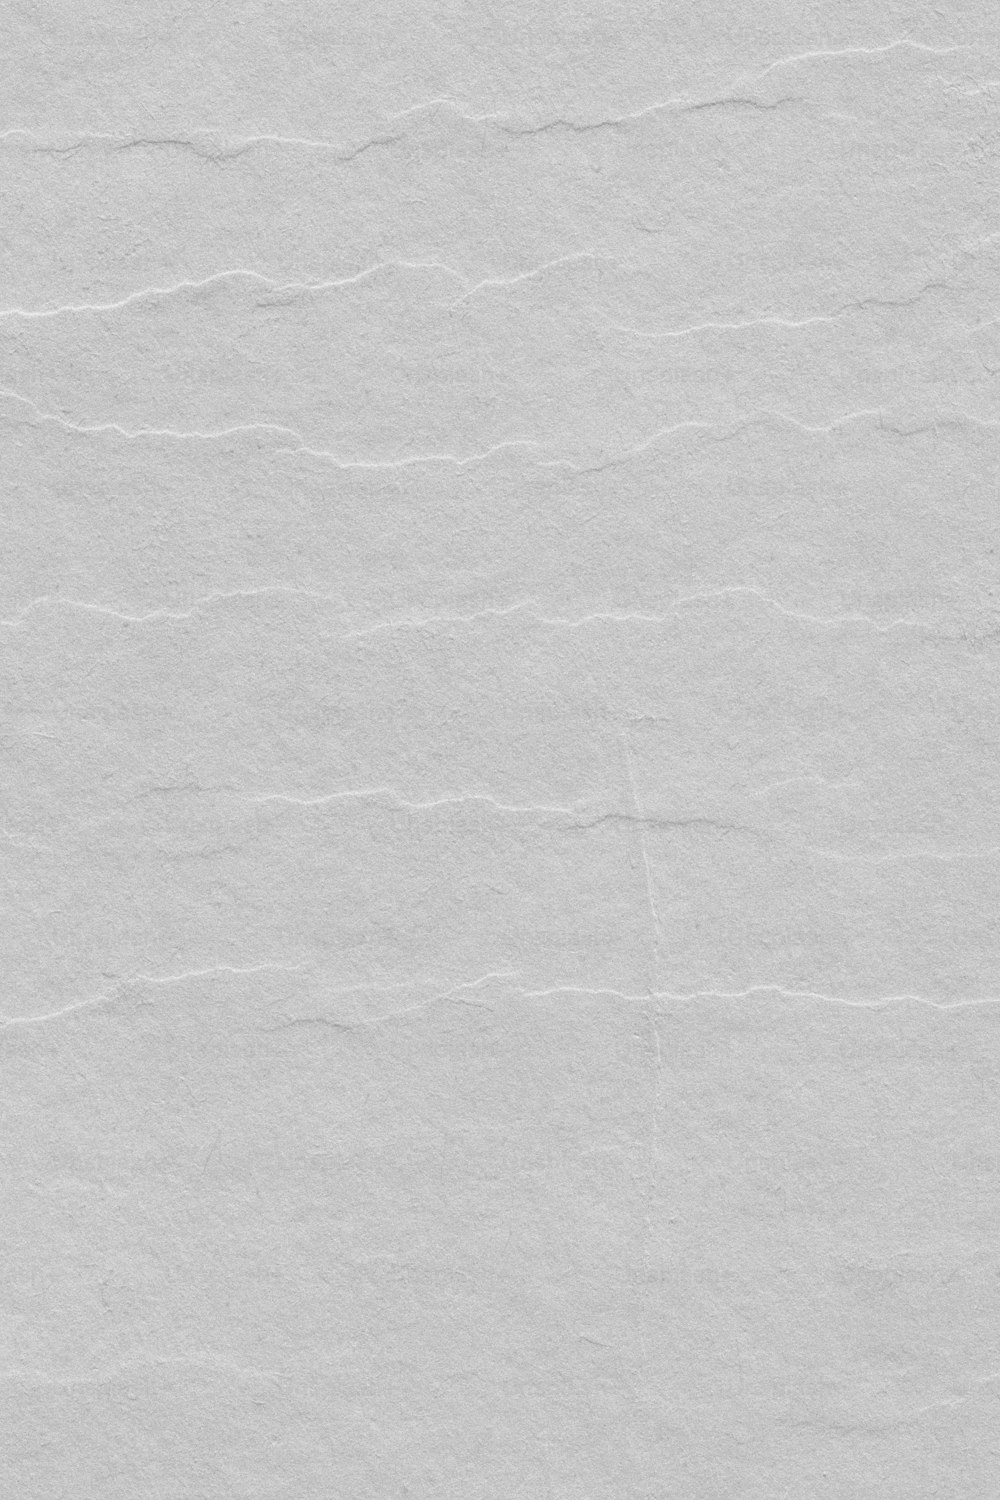 une feuille de papier blanc avec quelques lignes dessus